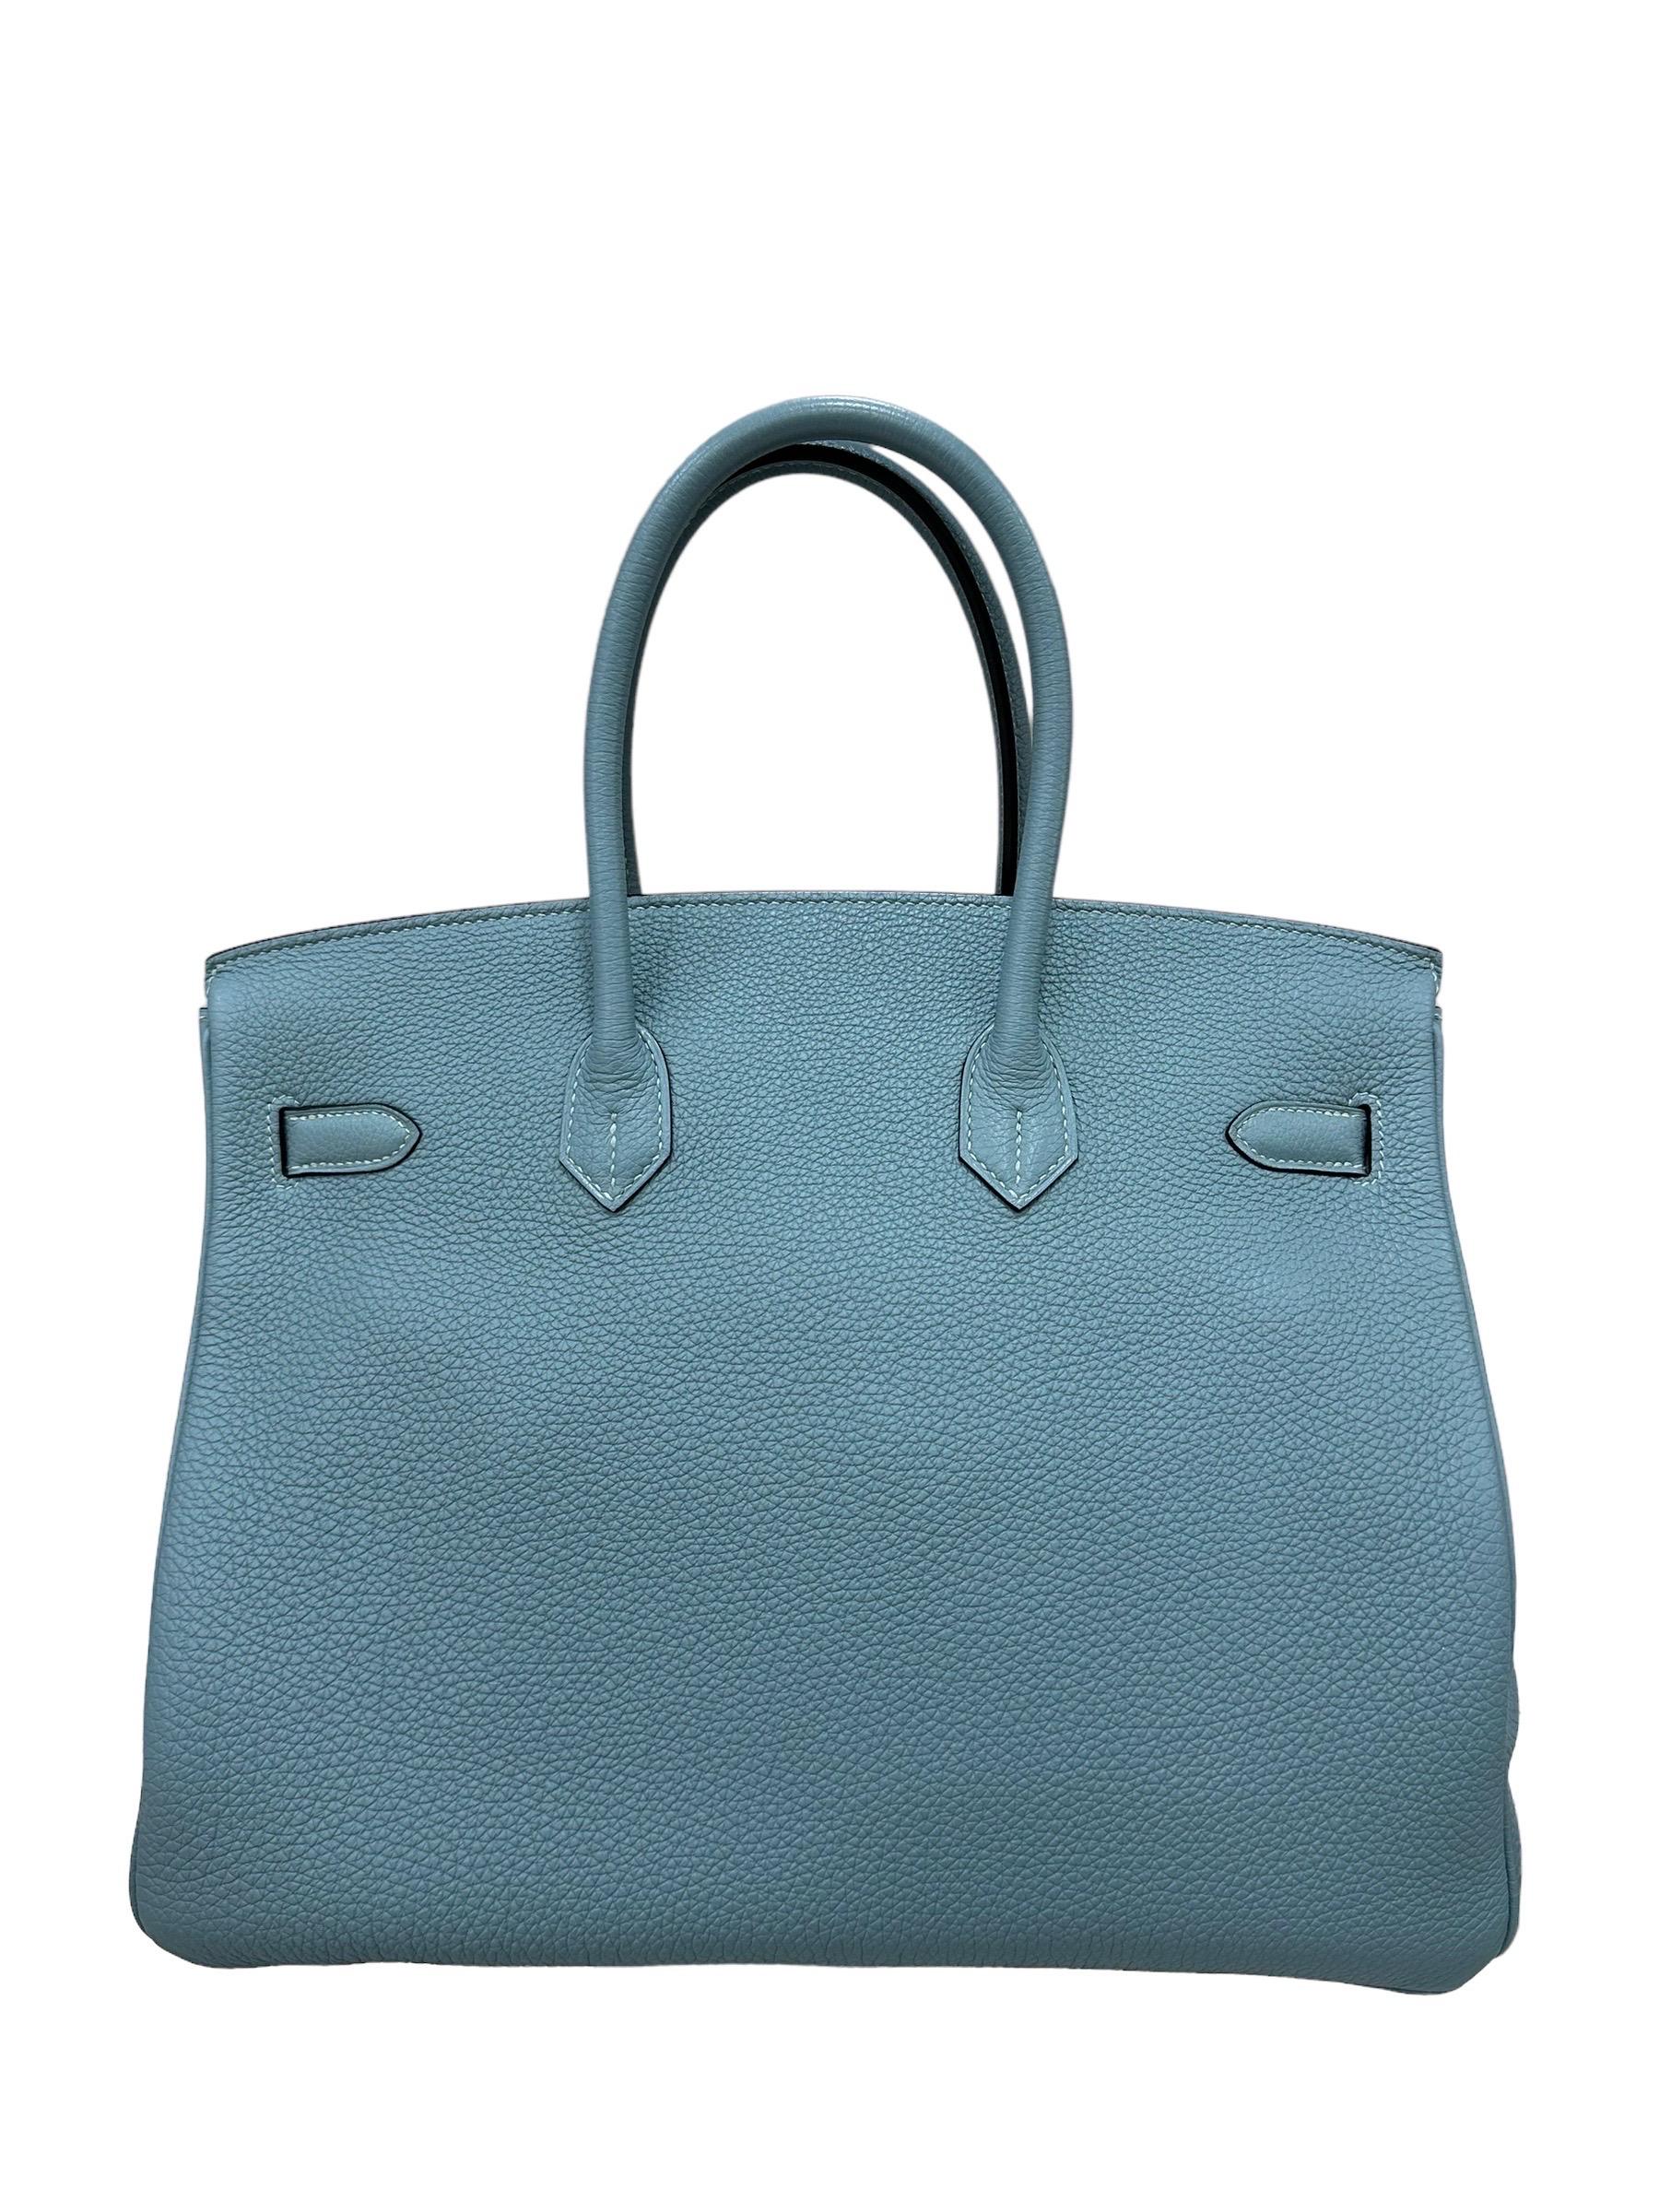 2009 Hermès Birkin 35 Togo Leather Ciel Top Handle Bag en vente 6